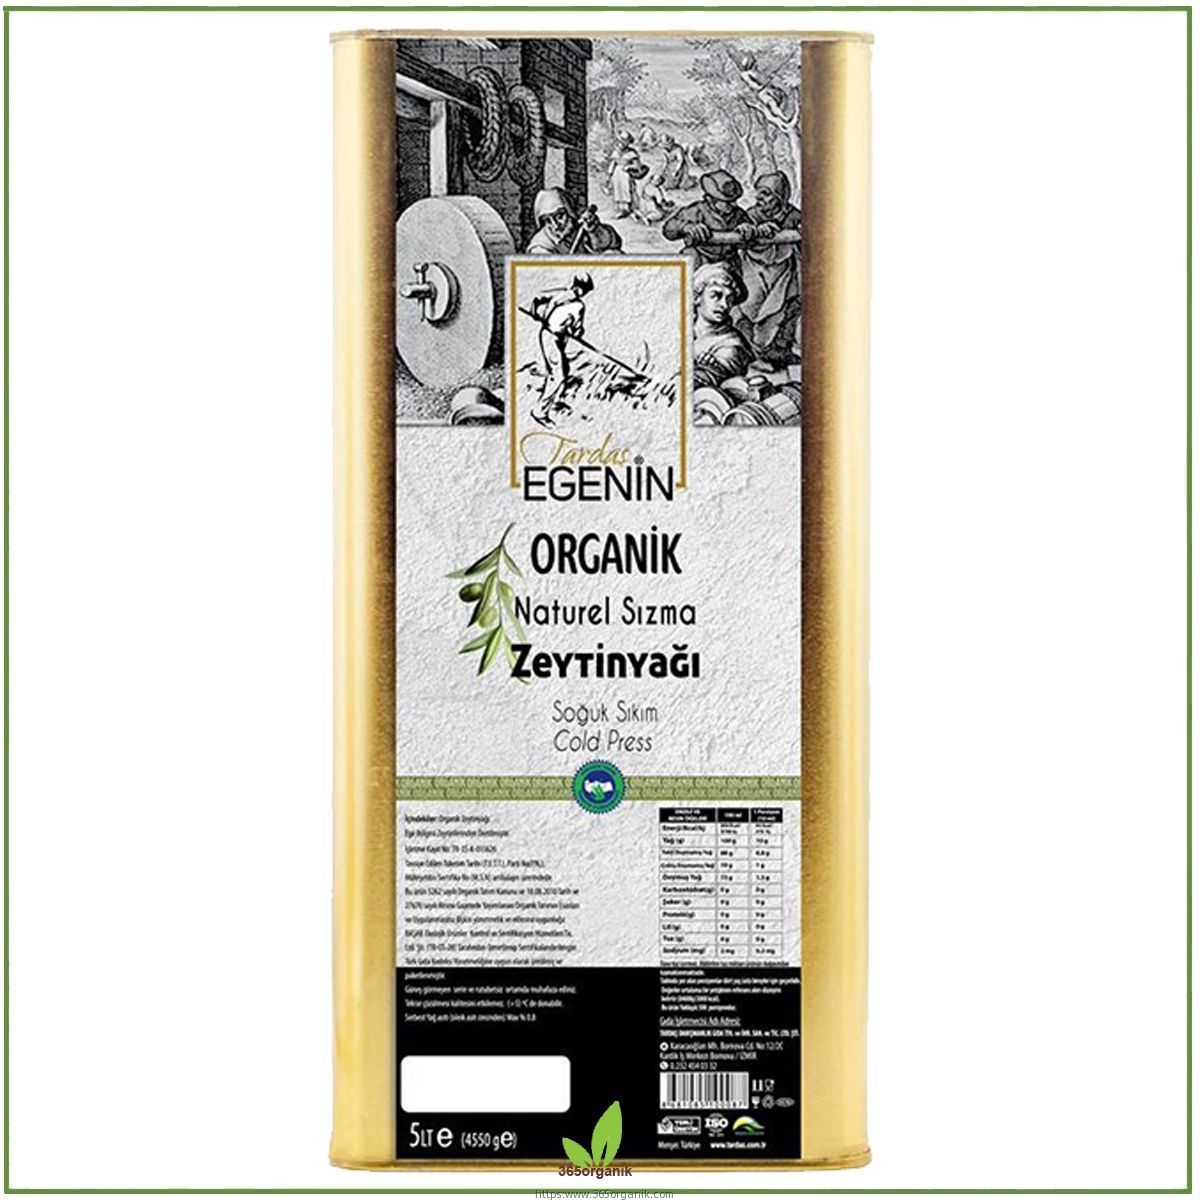 Tardaş Egenin Organik Sertifikalı Sızma Zeytinyağı 5 Lt | Tardaş Egenin | Organik Zeytinyağları | 